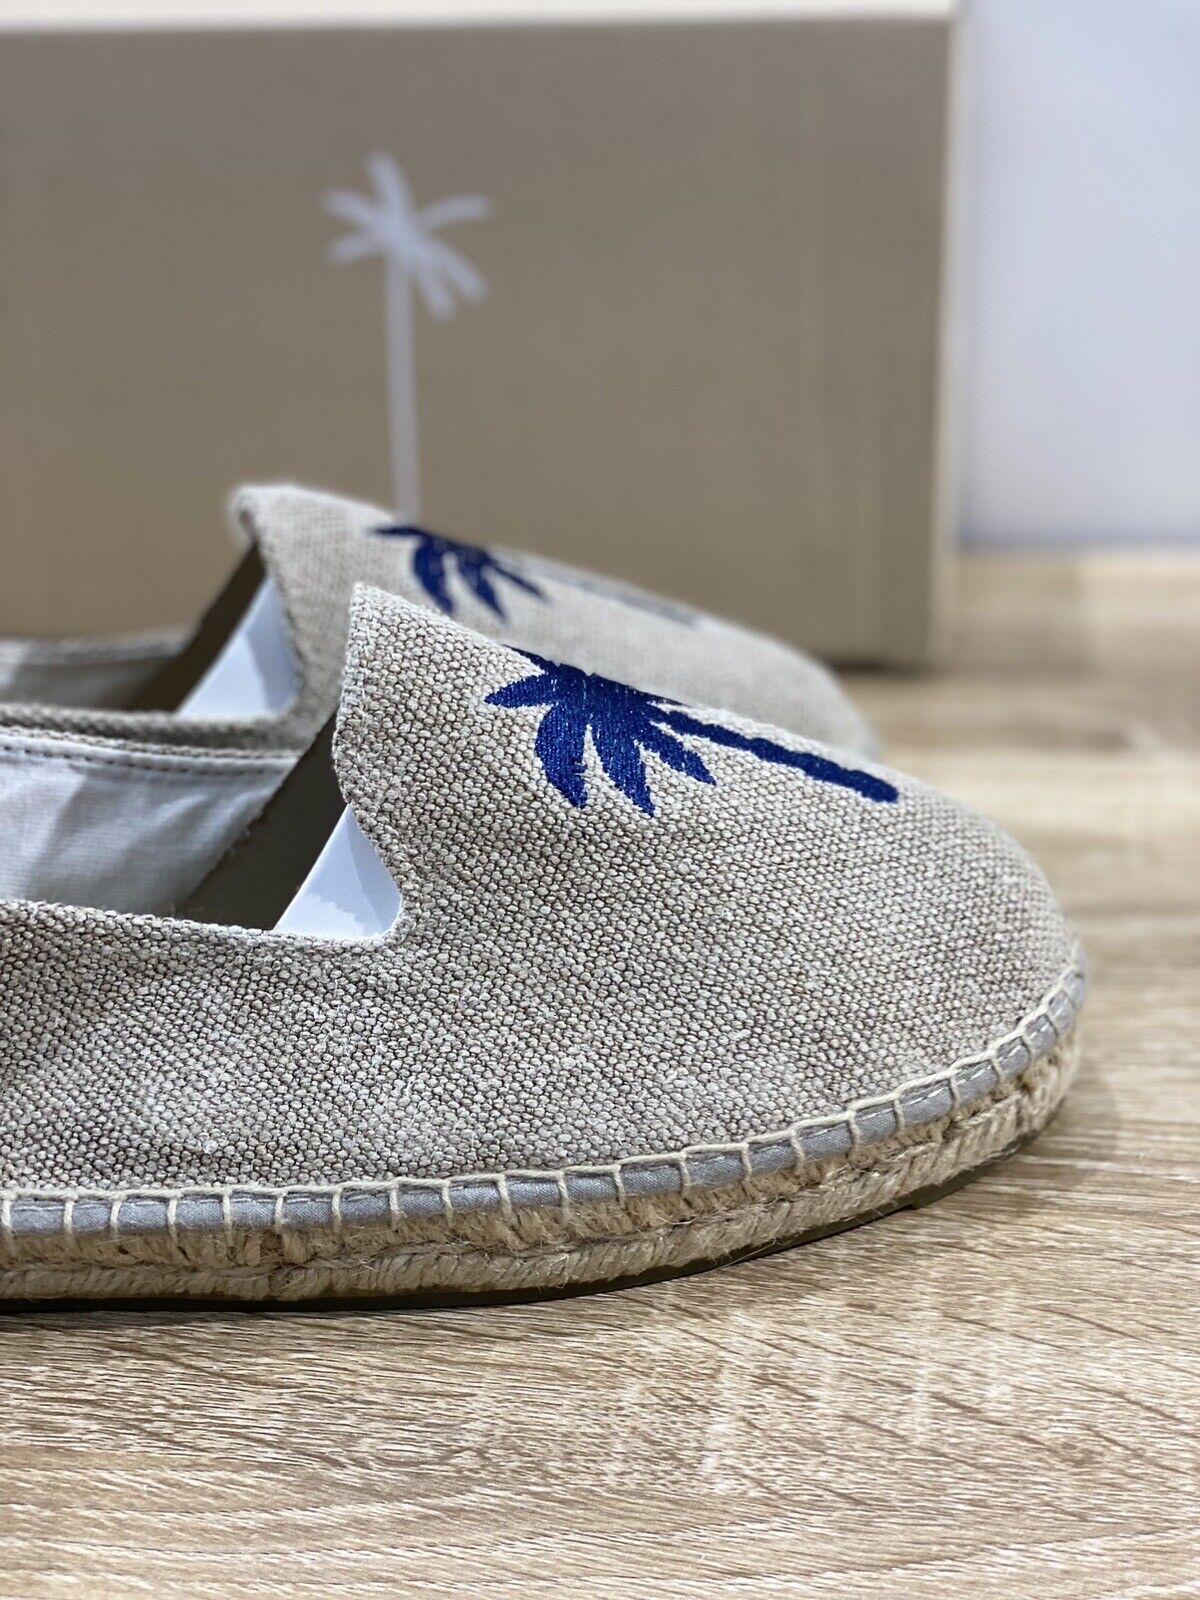 Manebi’ Uomo Espadrilles Mocassino Sand Casual Summer Shoes 45